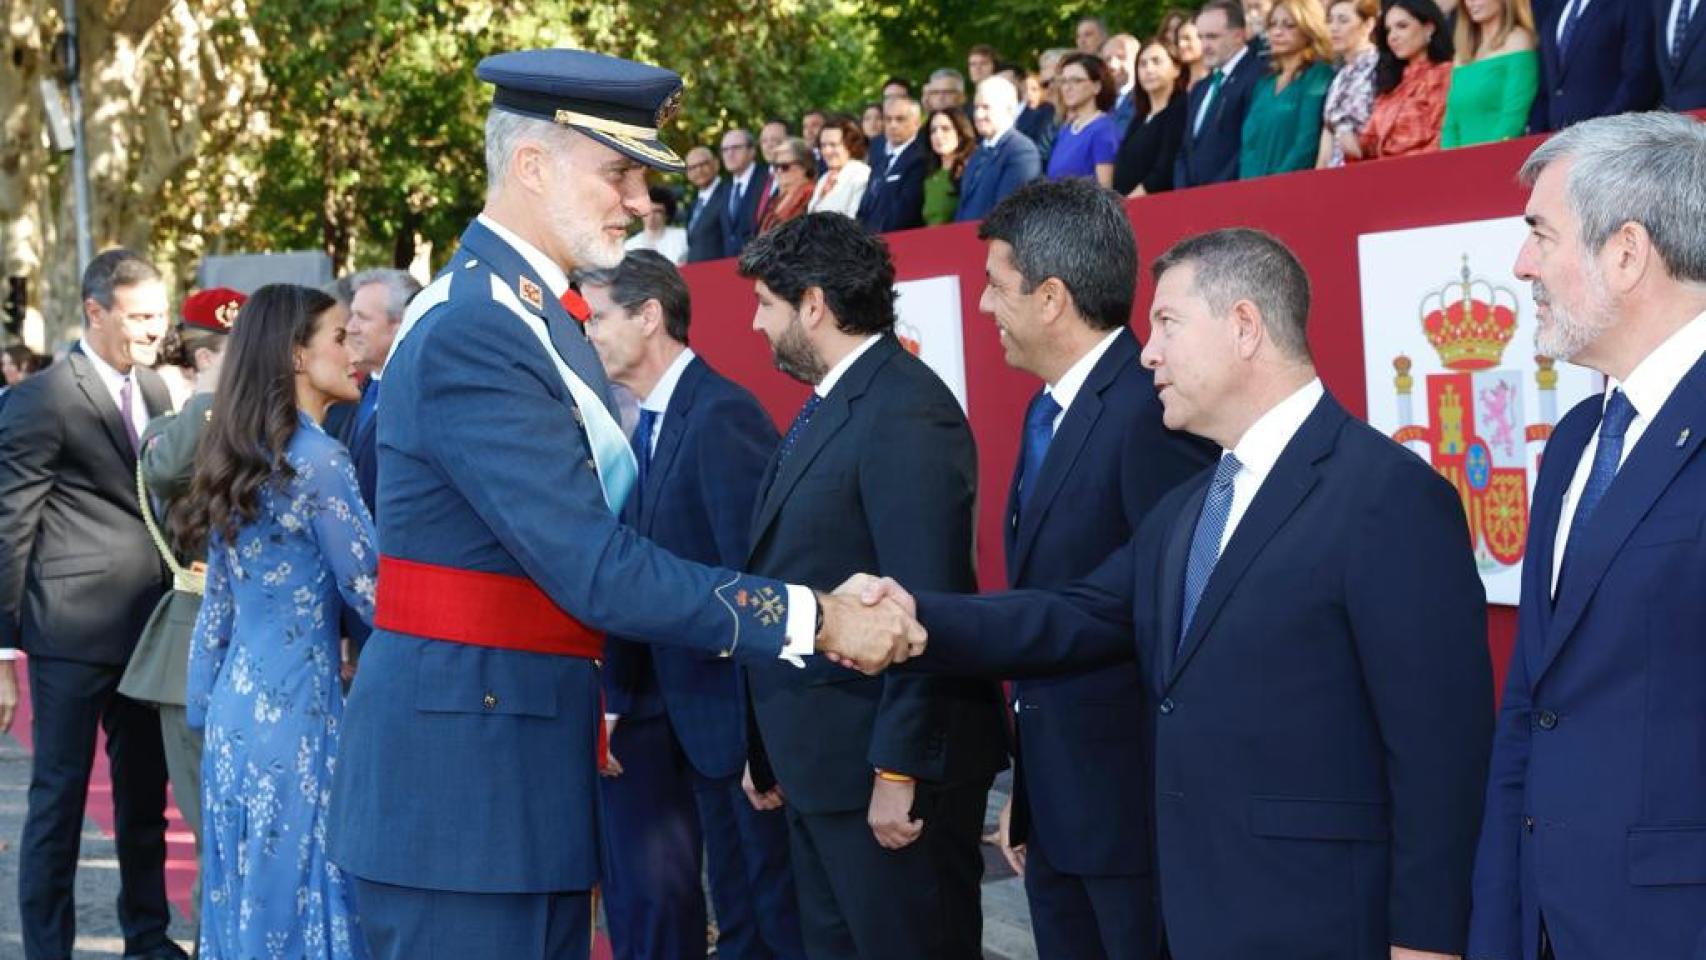 El rey Felipe VI saludando al presidente regional Emiliano García-Page. Foto: Casa de S.M. el Rey.